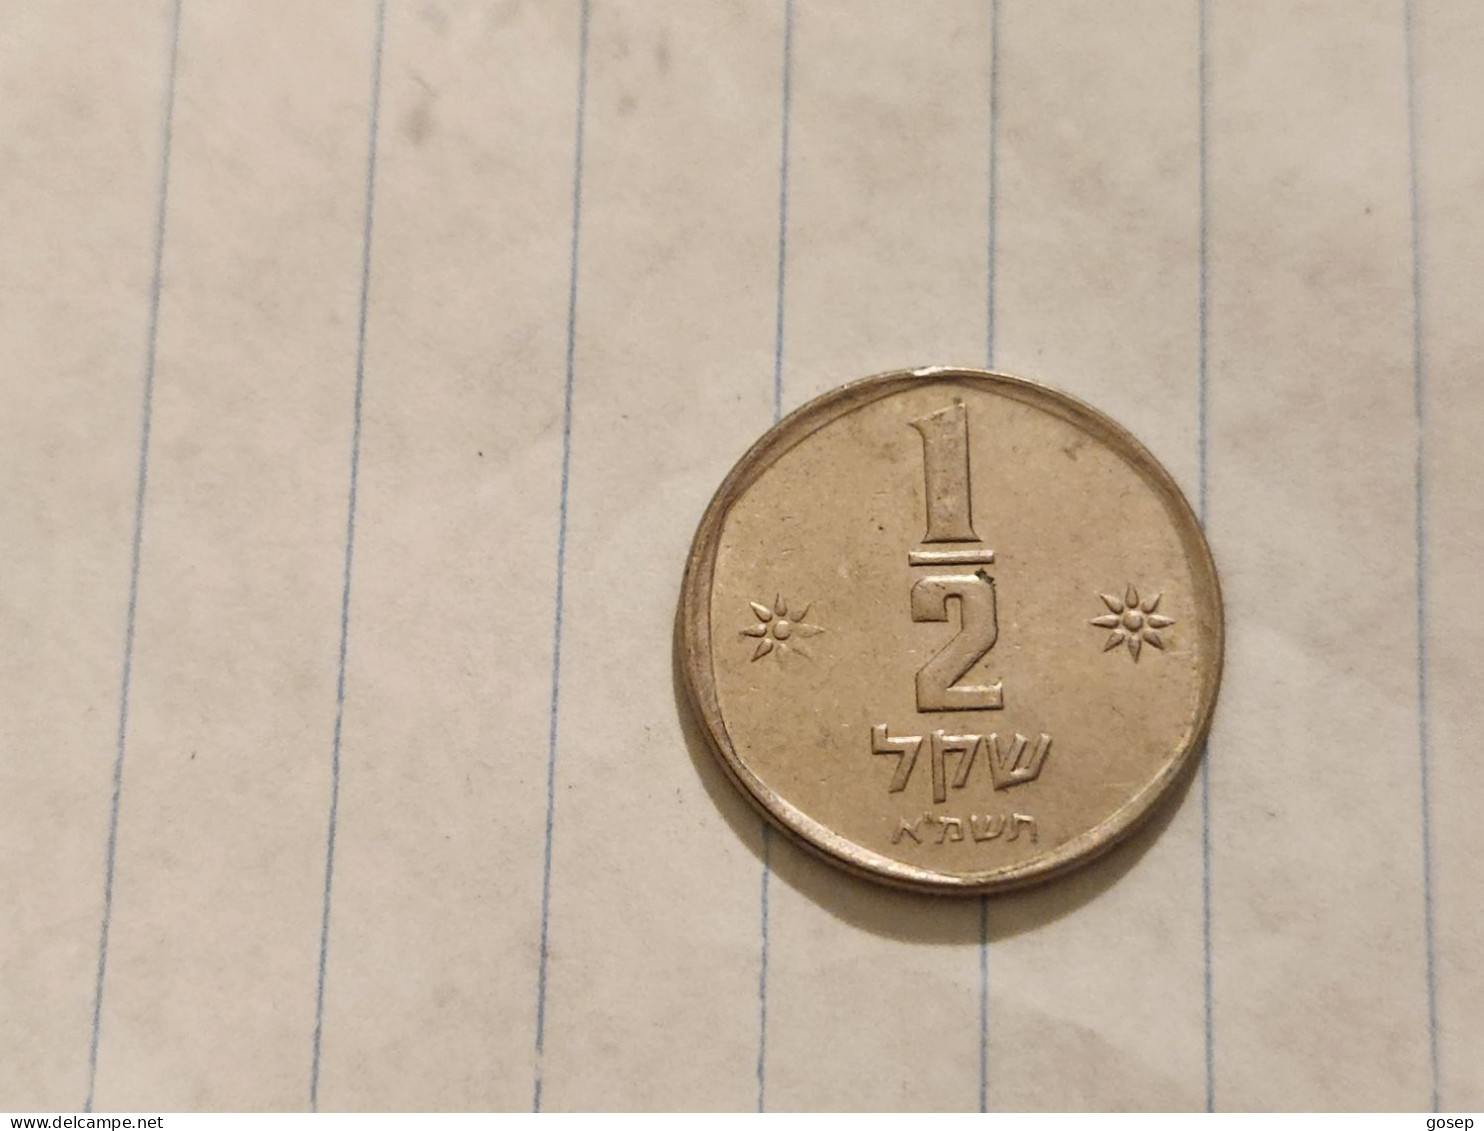 Israel-Coins-SHEKEL(1985-1981)-1/2 SHEKEL-Hapanka 32-(1981)-(23)-תשמ"א-NIKEL-good - Israele